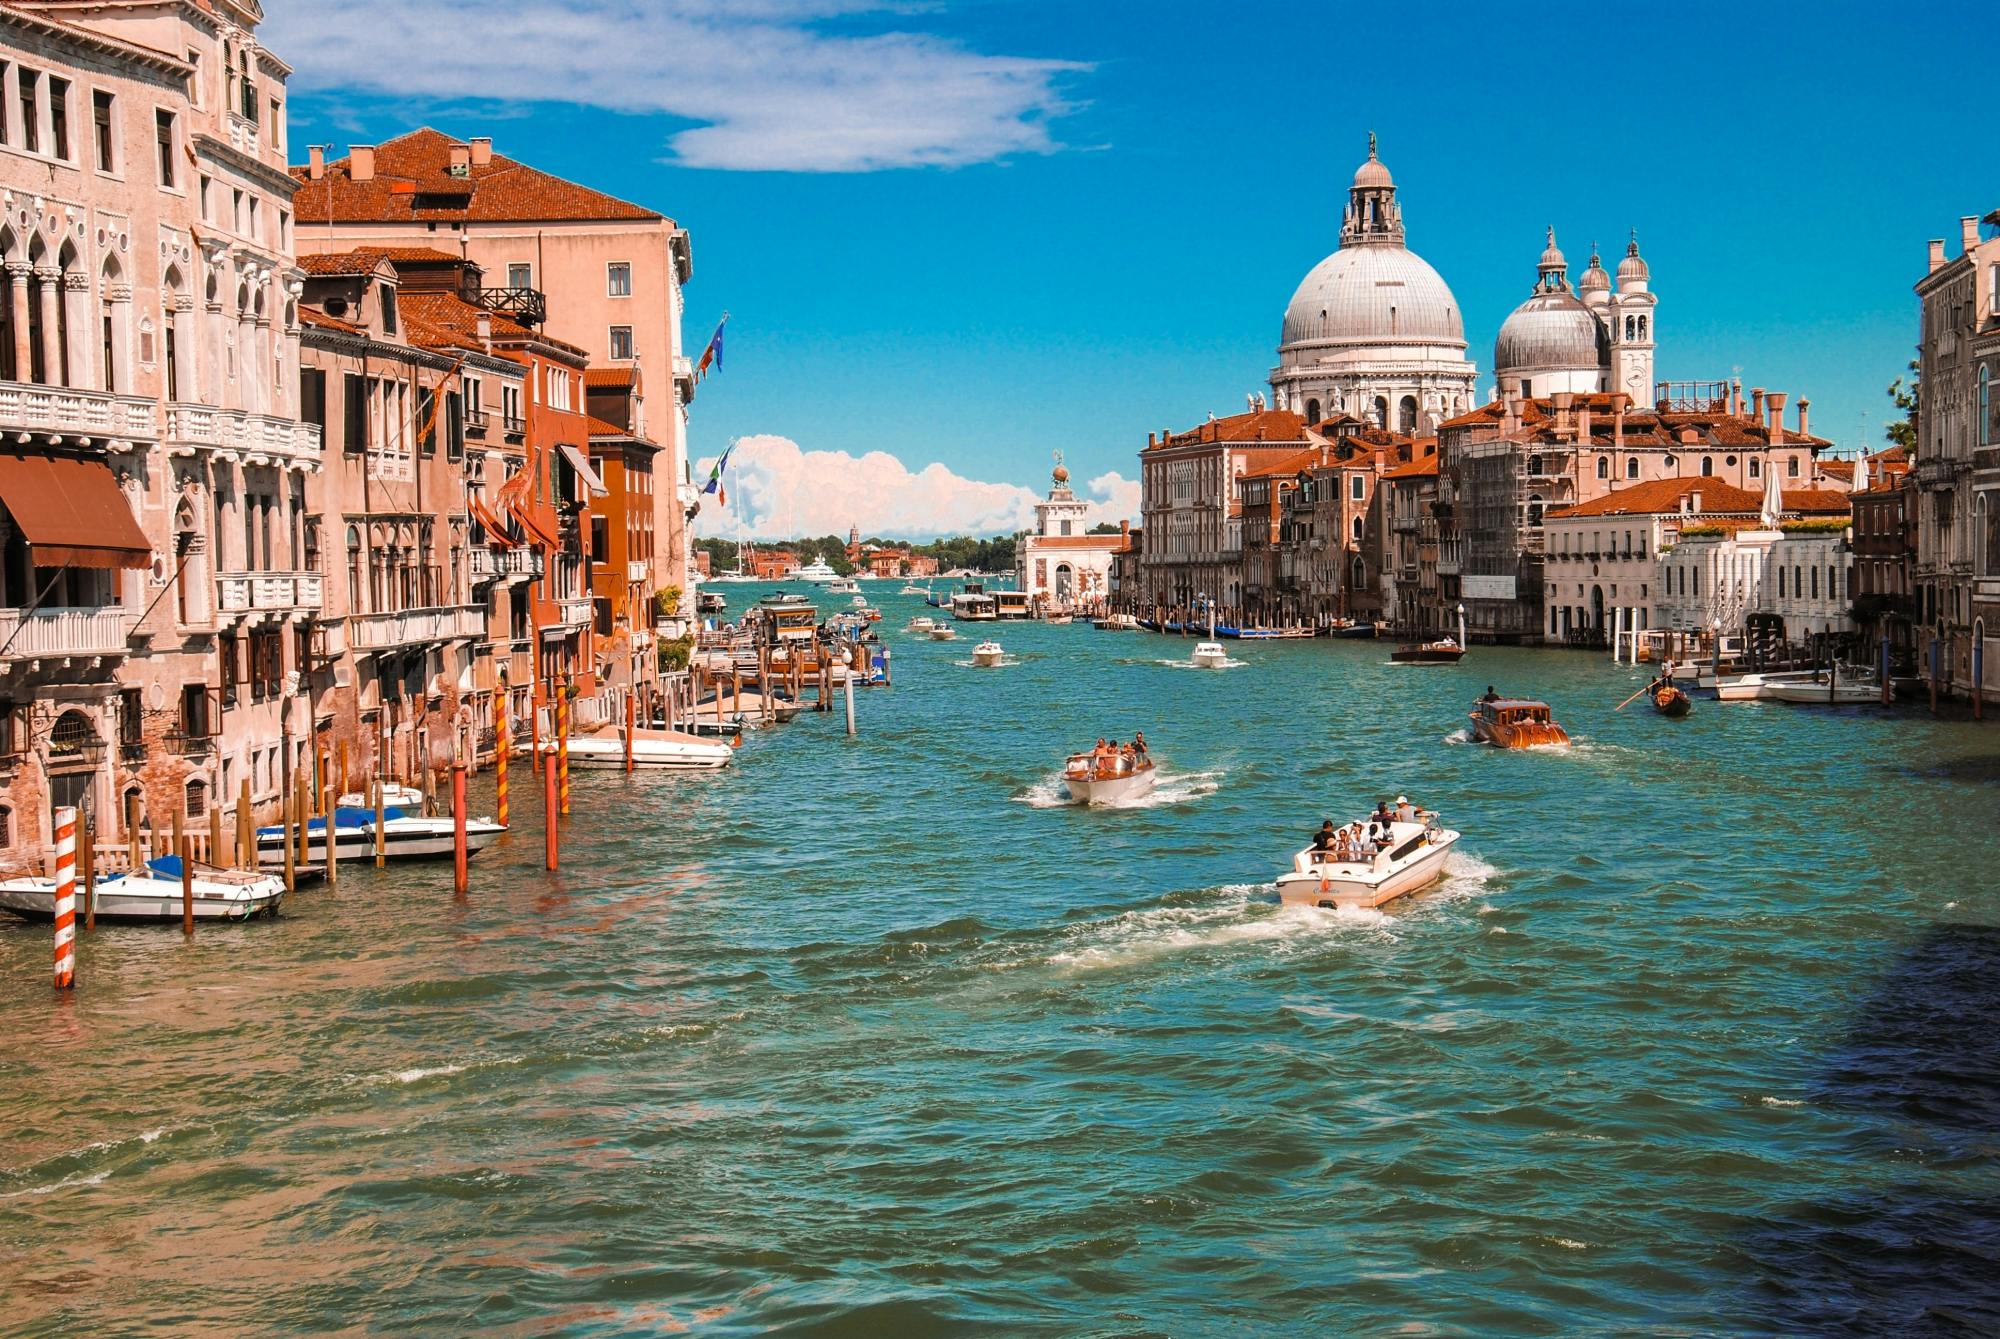 90-minütige Tour durch Venedig mit einem Einheimischen